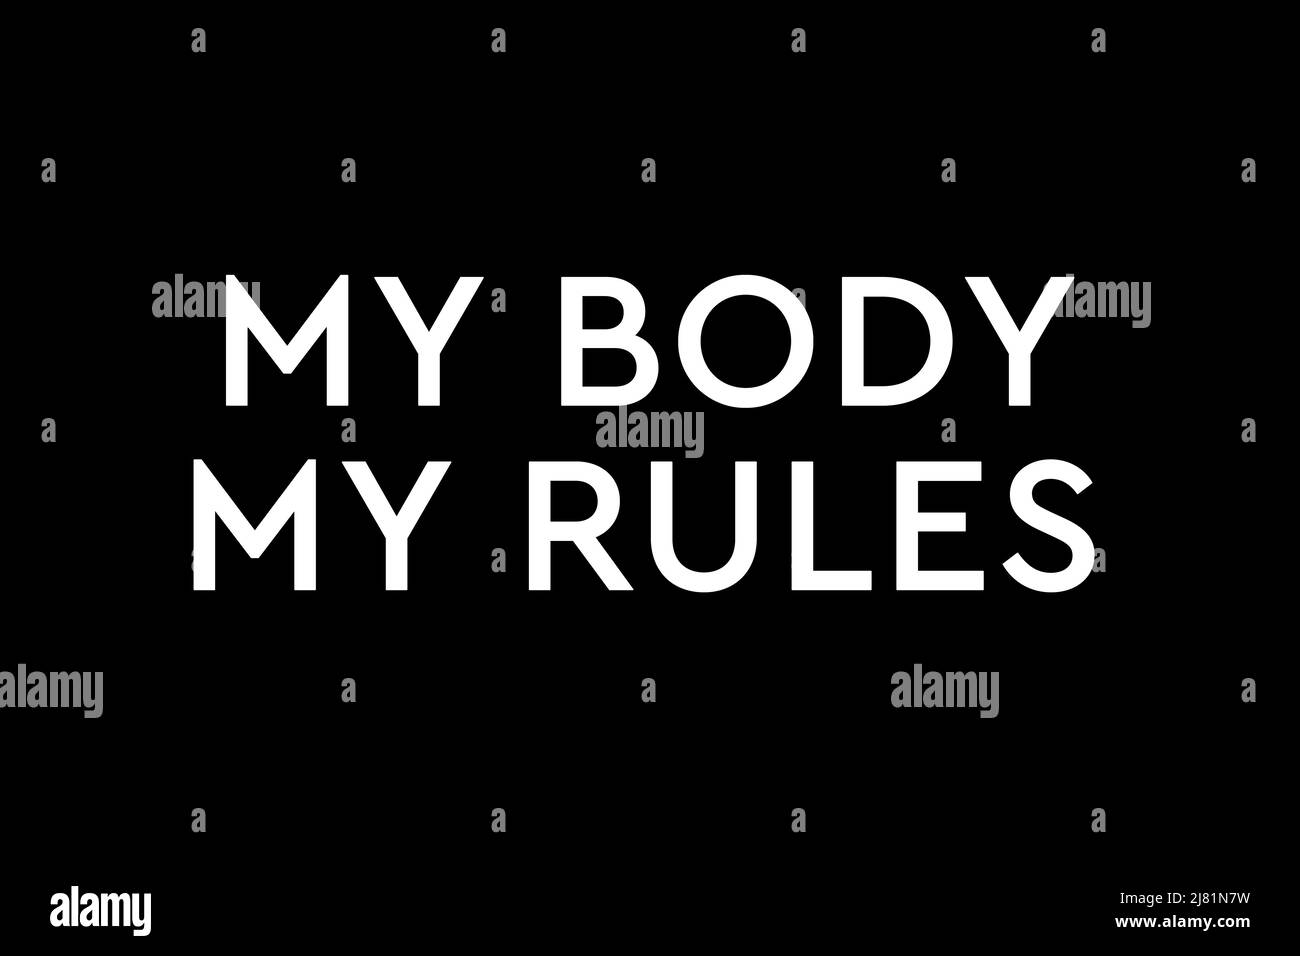 L'avortement doit rester légal. Mon corps mes règles. Affiche, bannière ou arrière-plan pro avortement Banque D'Images